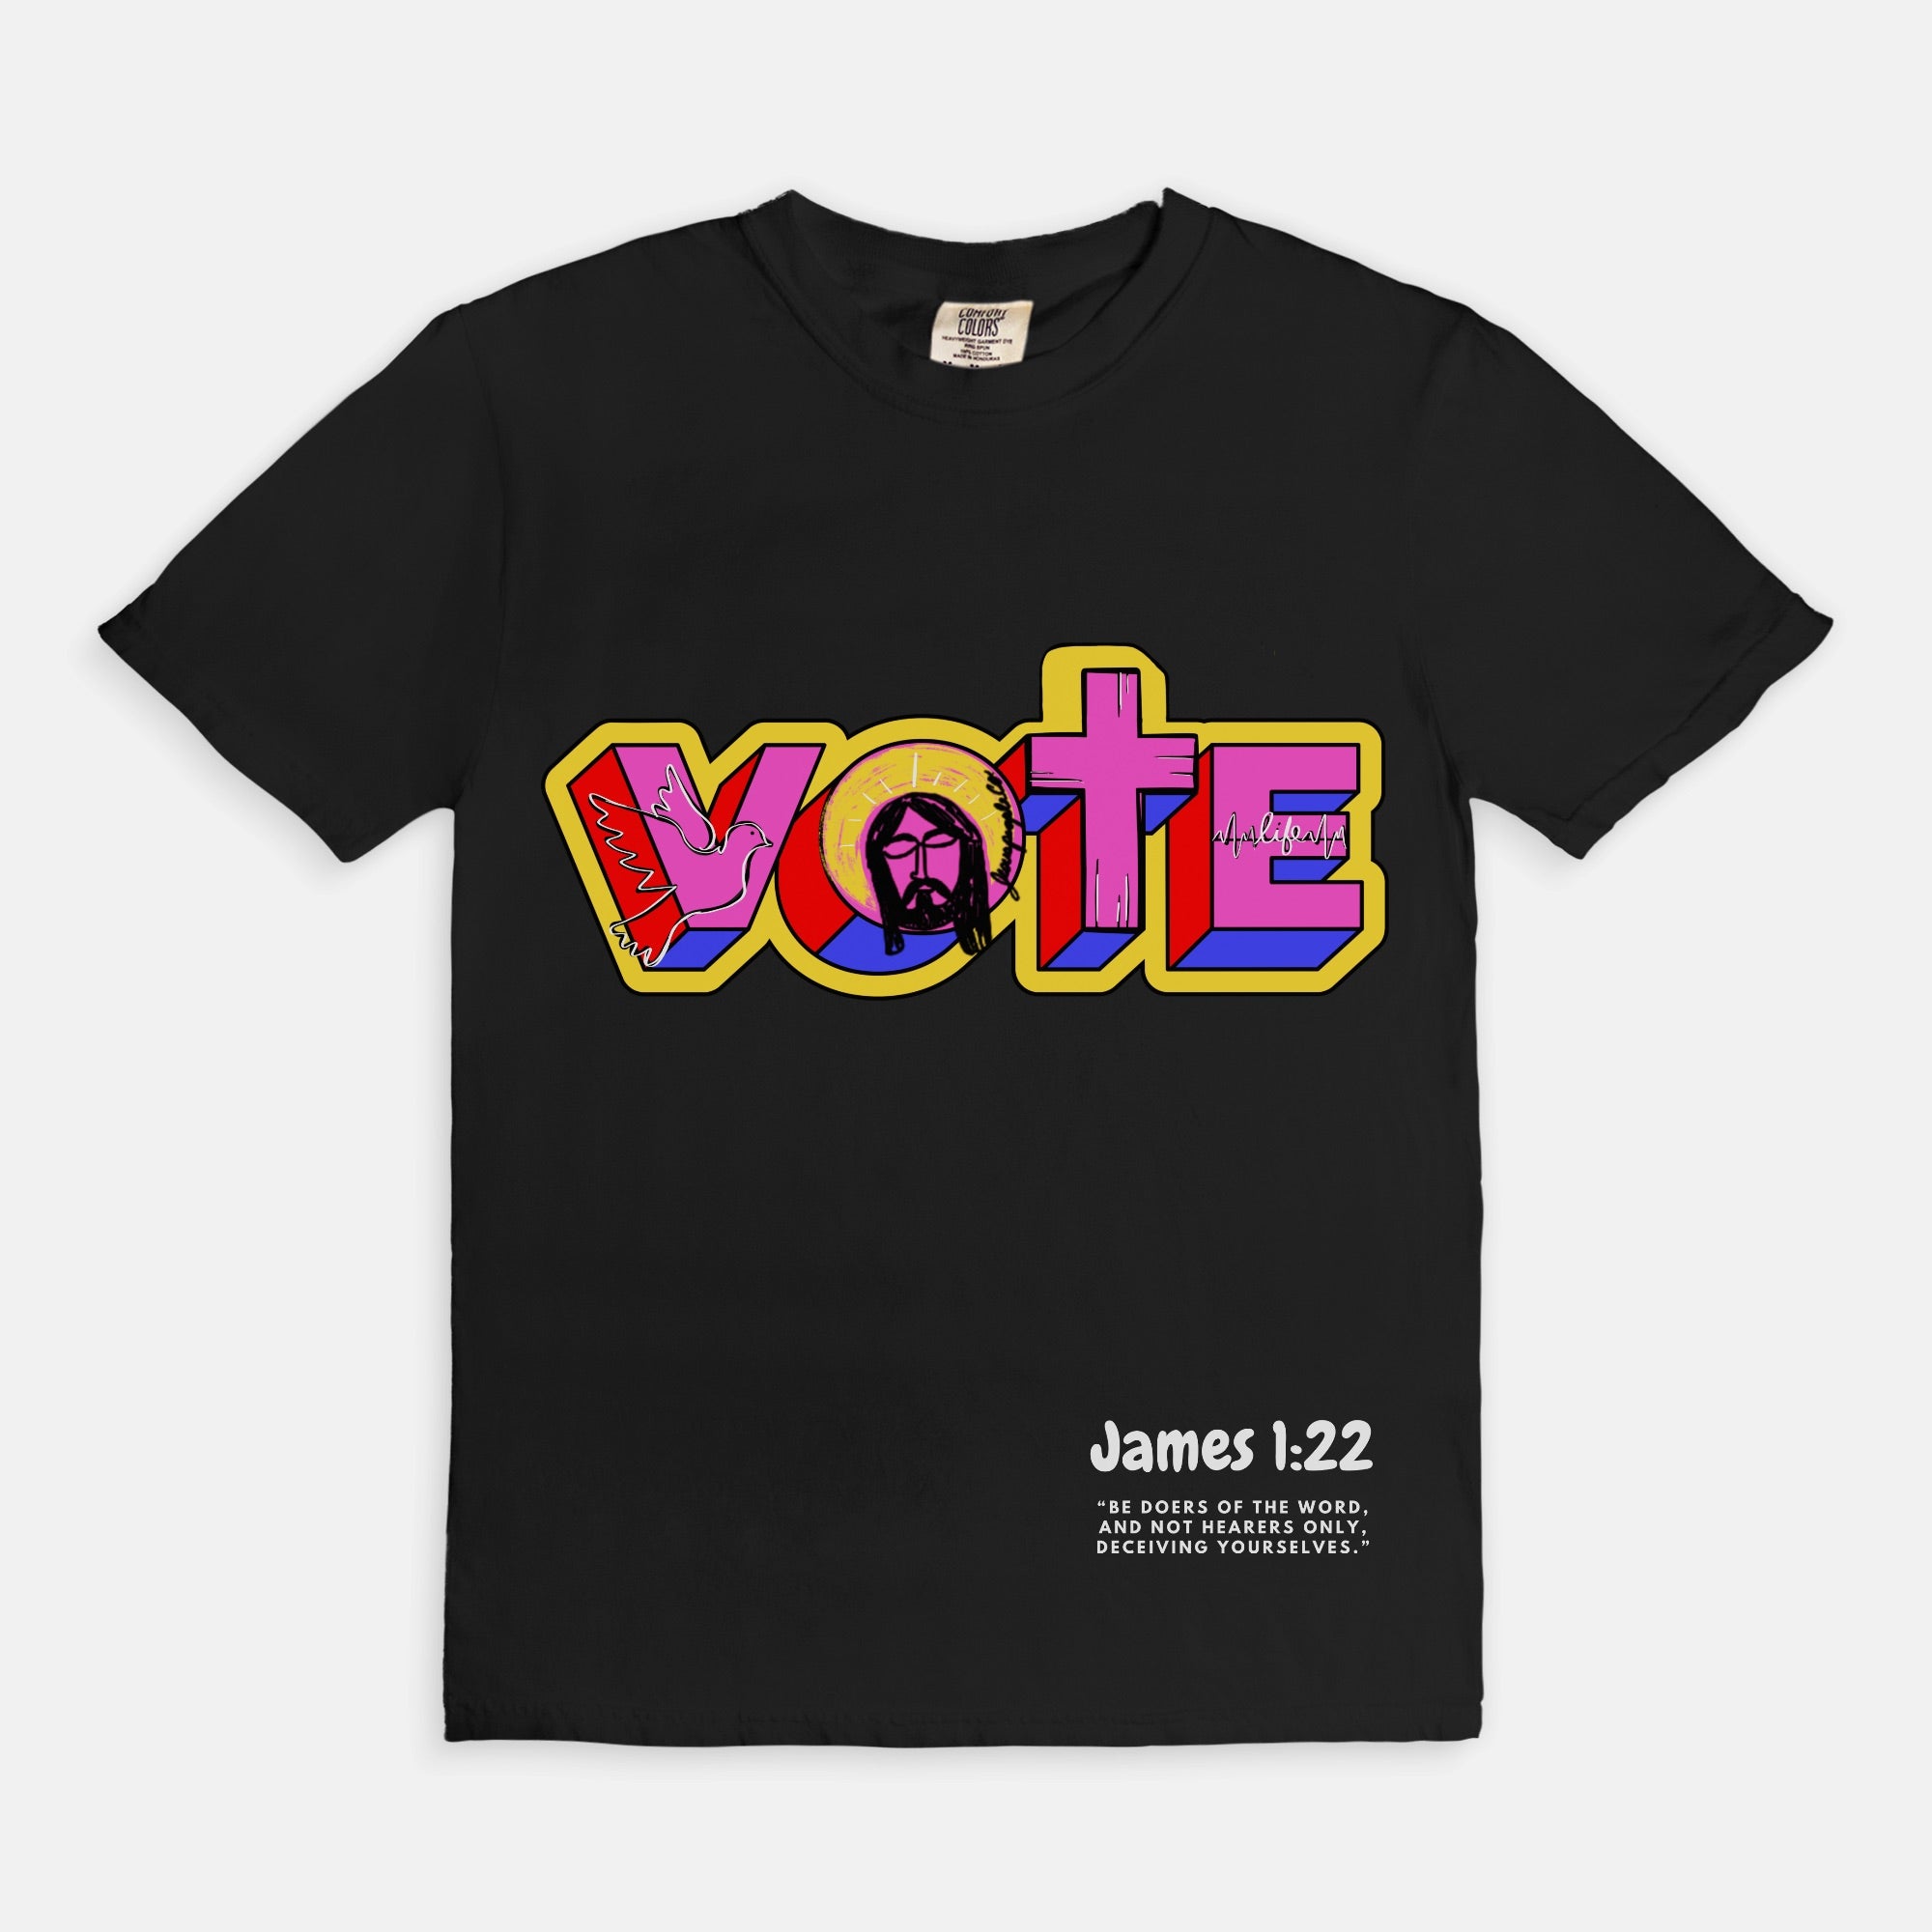 VOTE plus in black